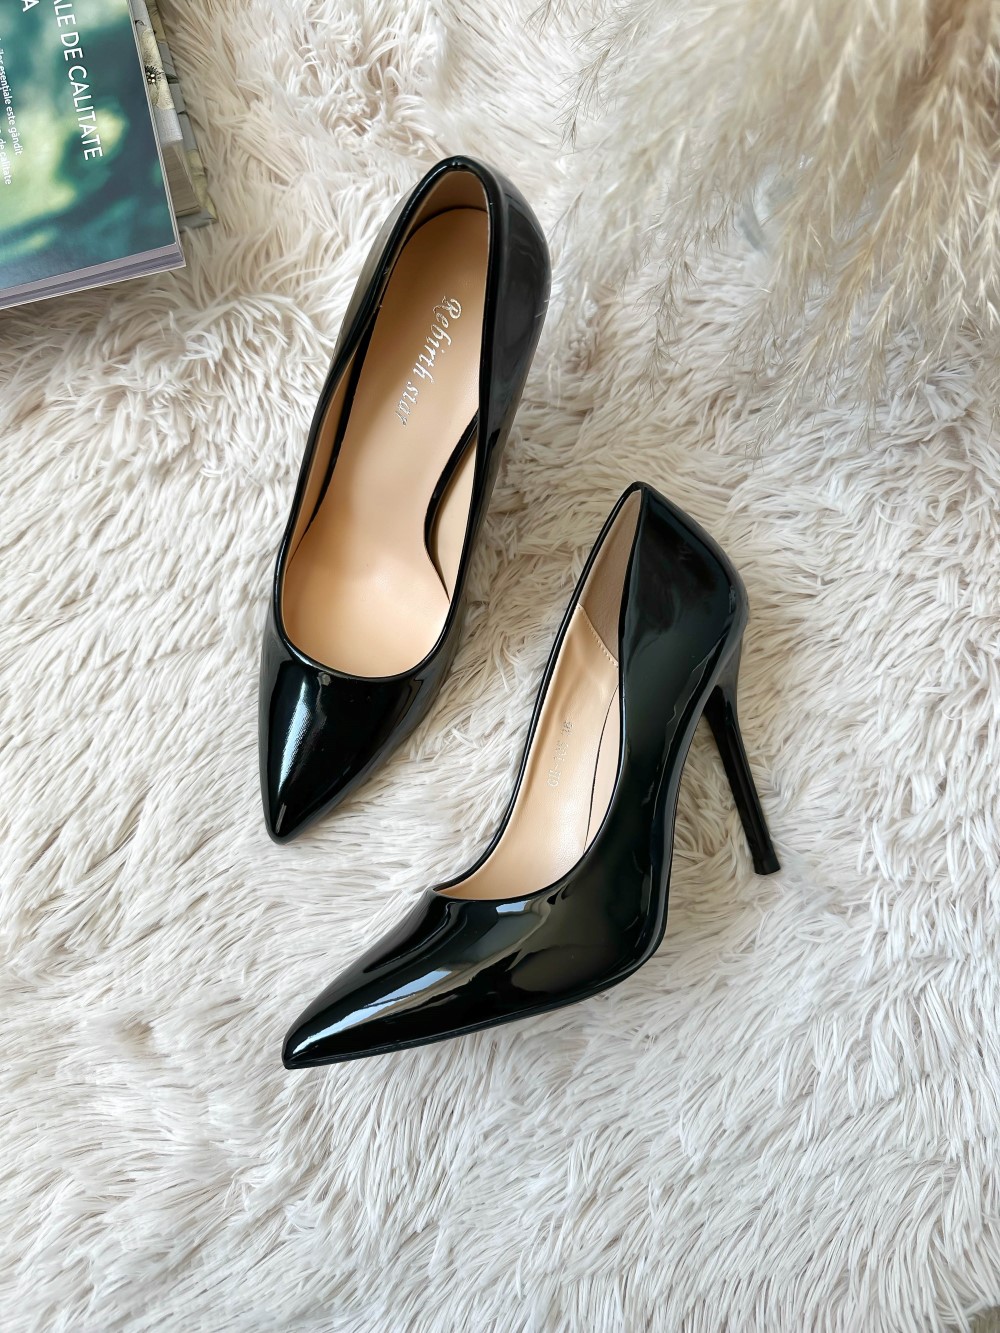 Pantofi eleganti dama cu toc subtire negri GH105